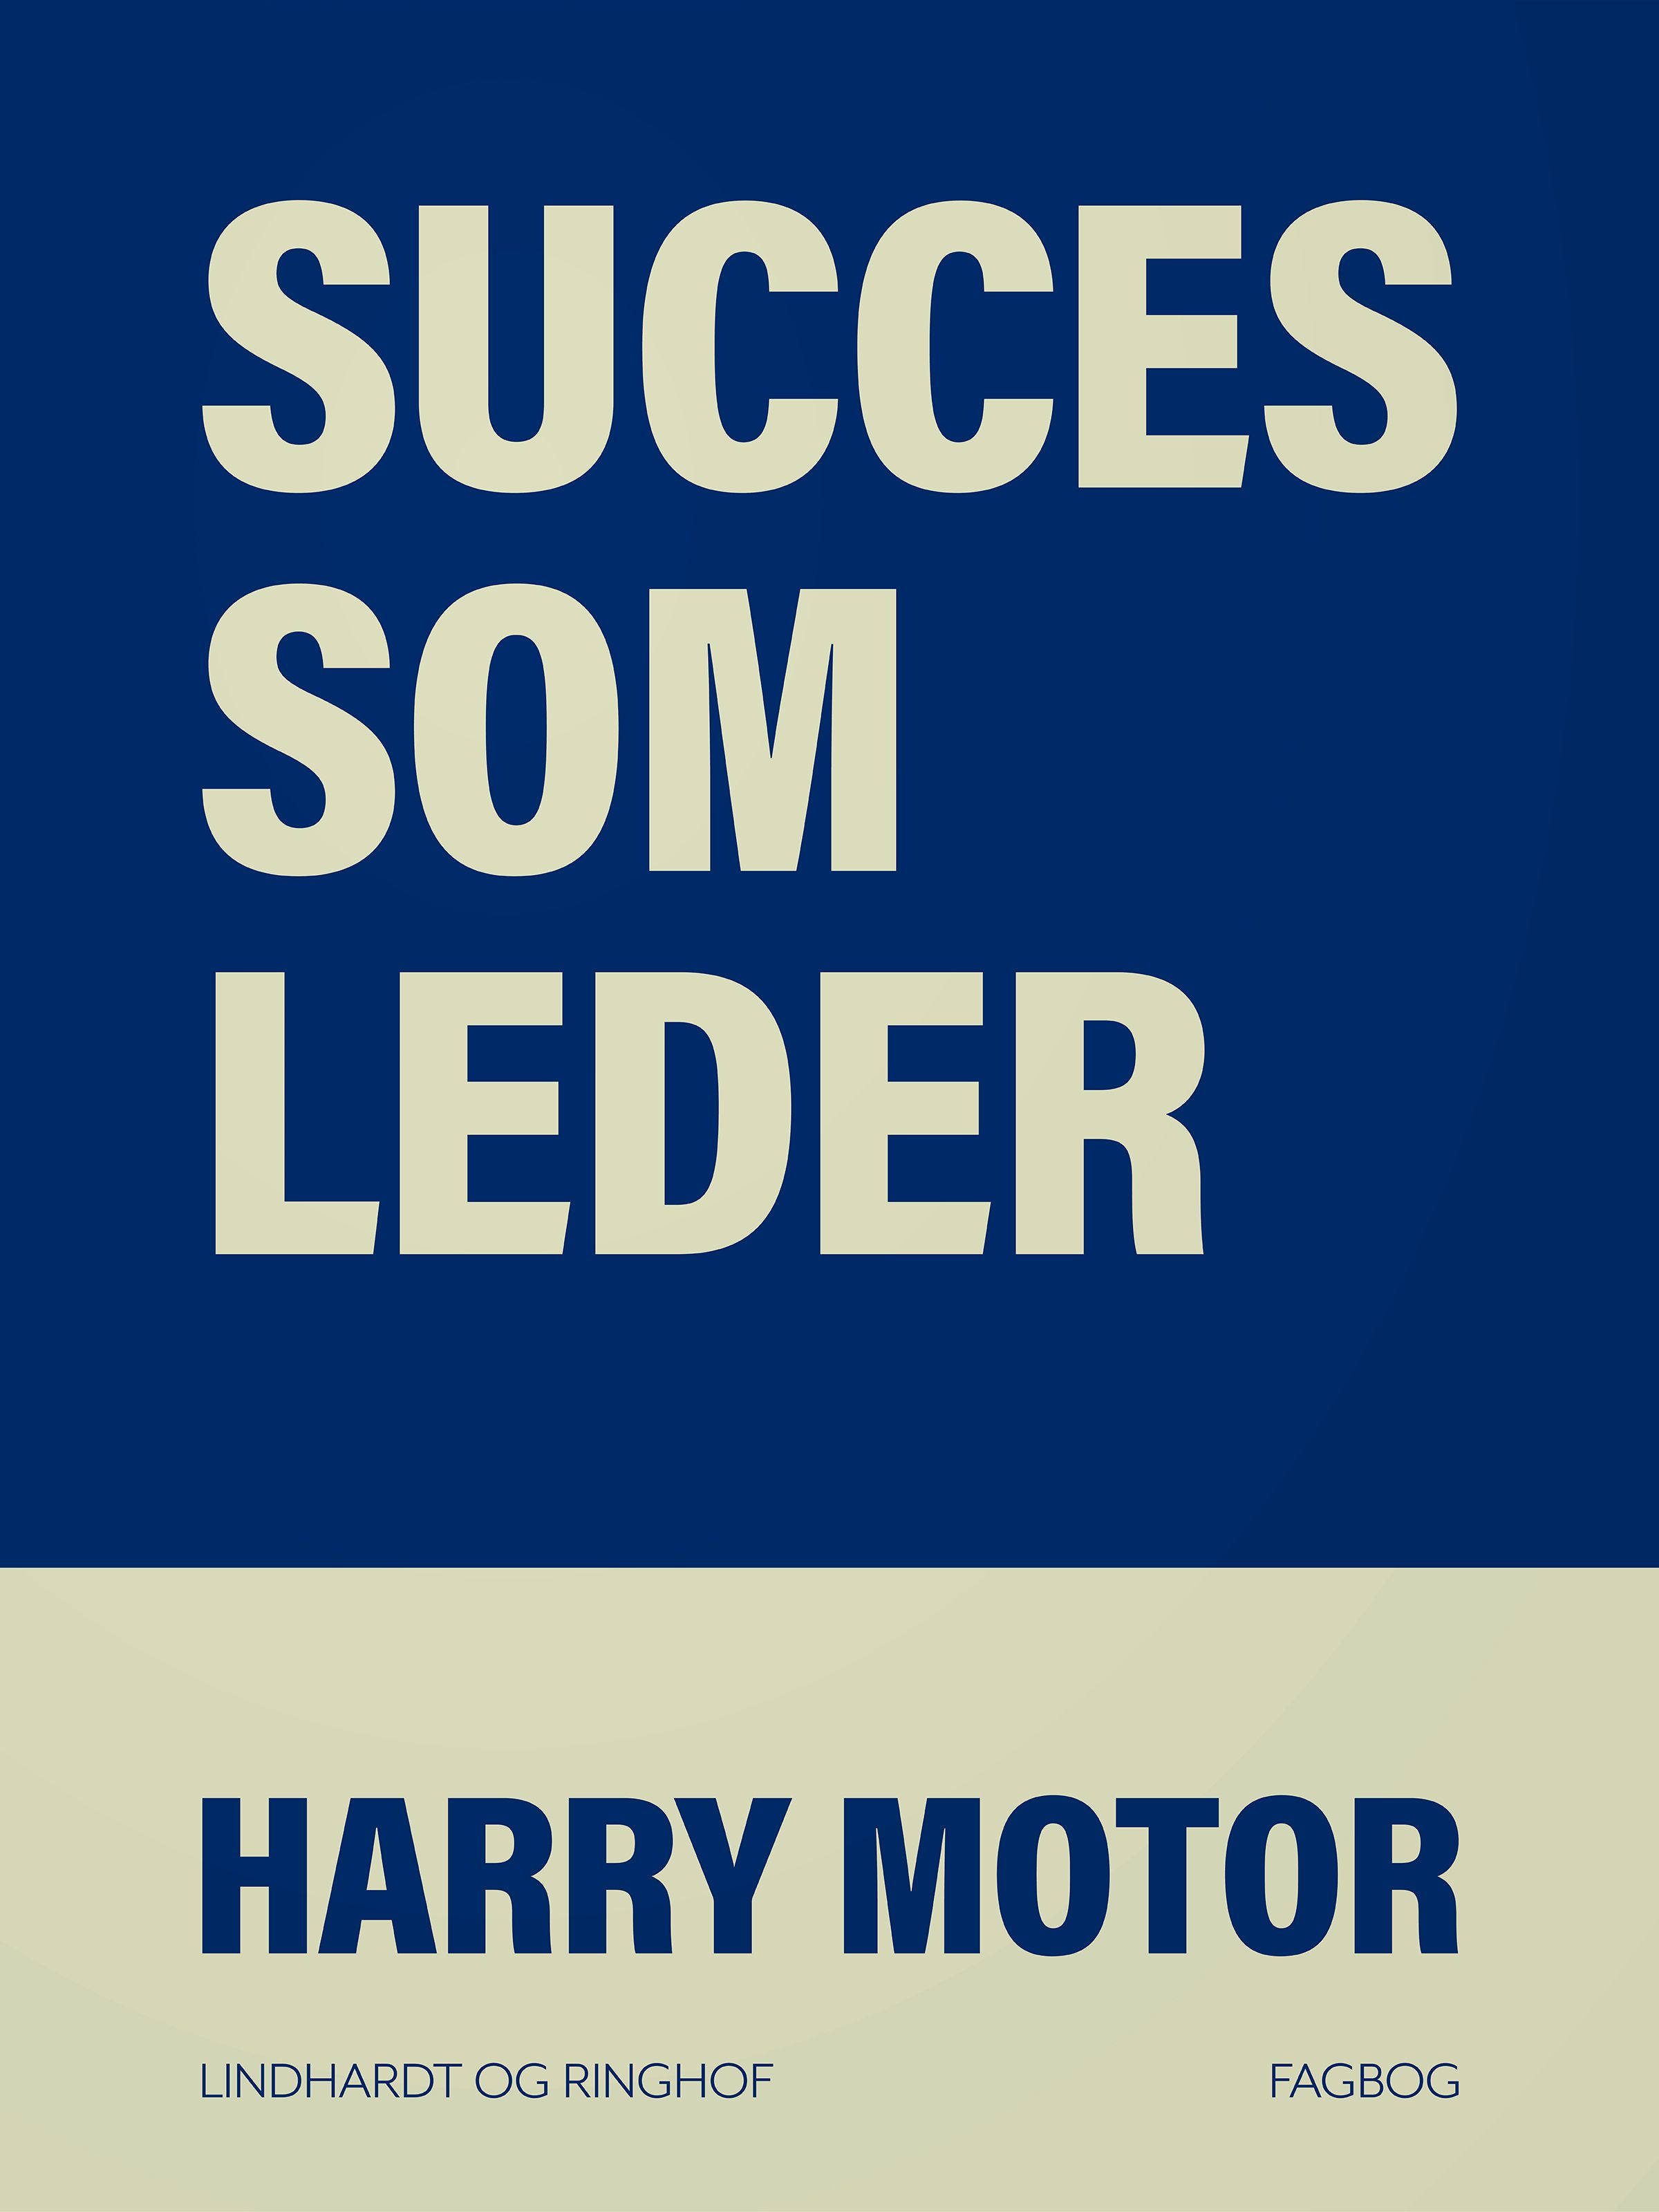 Succes som leder, eBook by Harry Motor